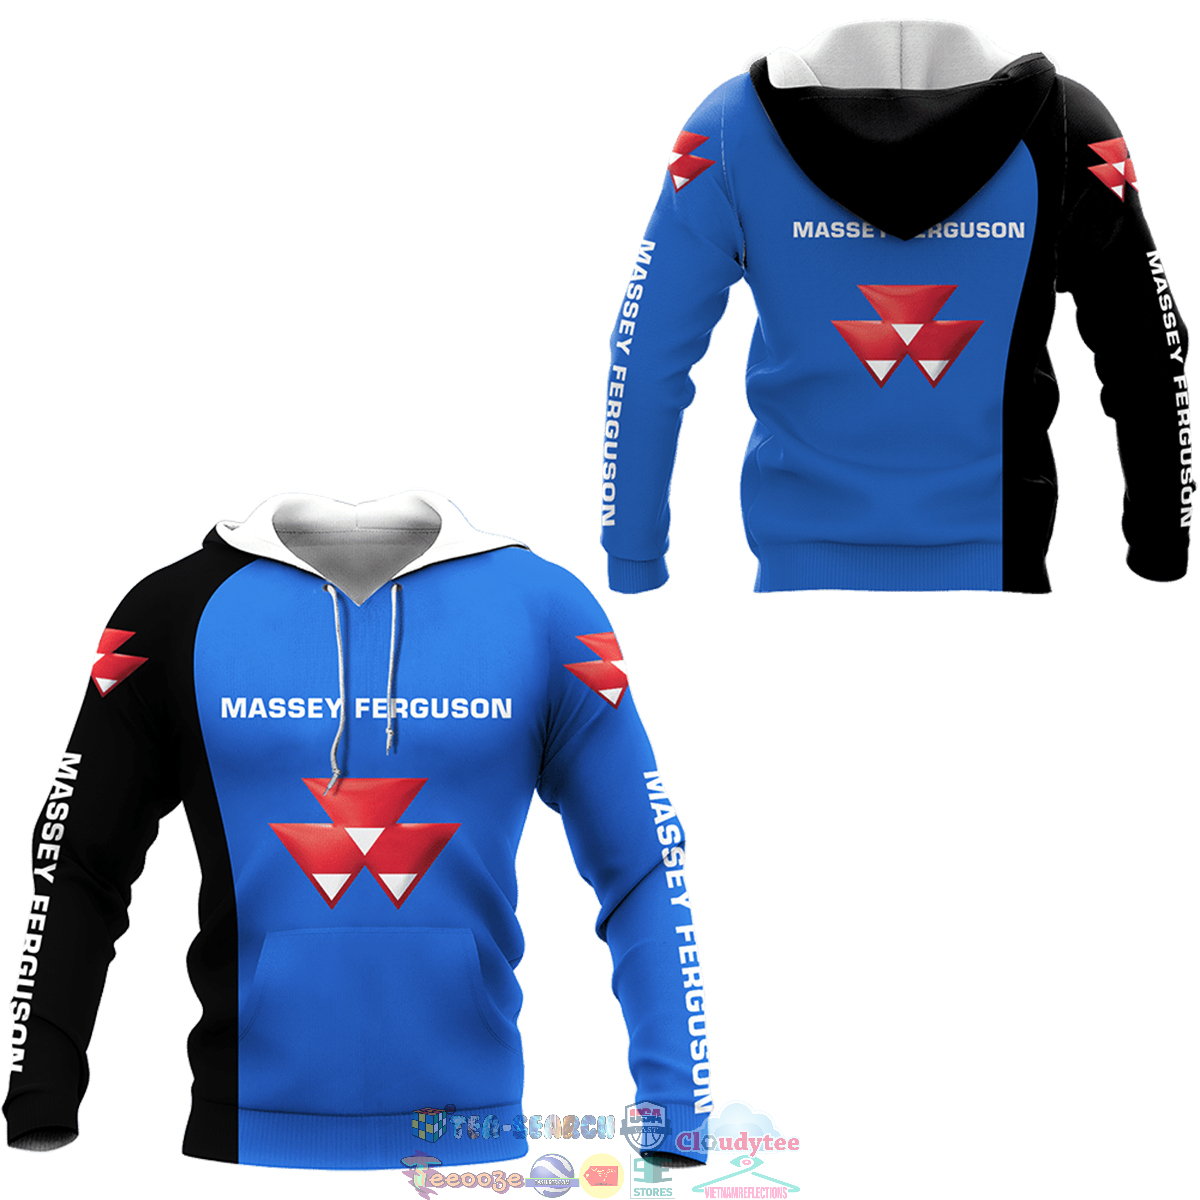 Massey Ferguson ver 1 3D hoodie and t-shirt – Saleoff